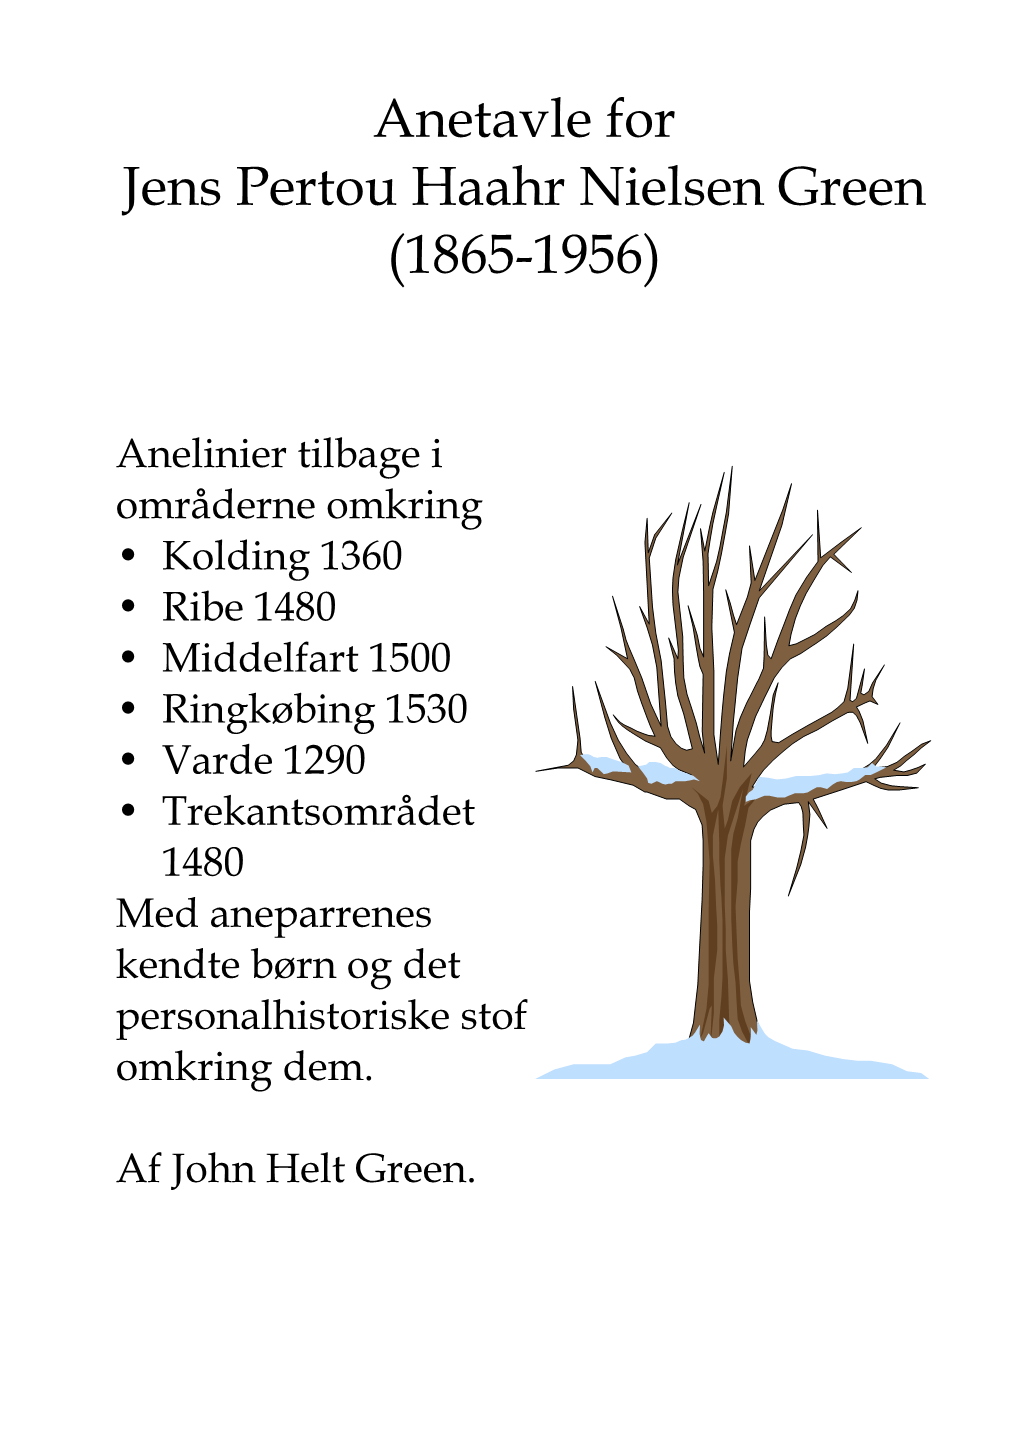 Anetavle for Jens Pertou Haahr Nielsen Green (1865-1956)